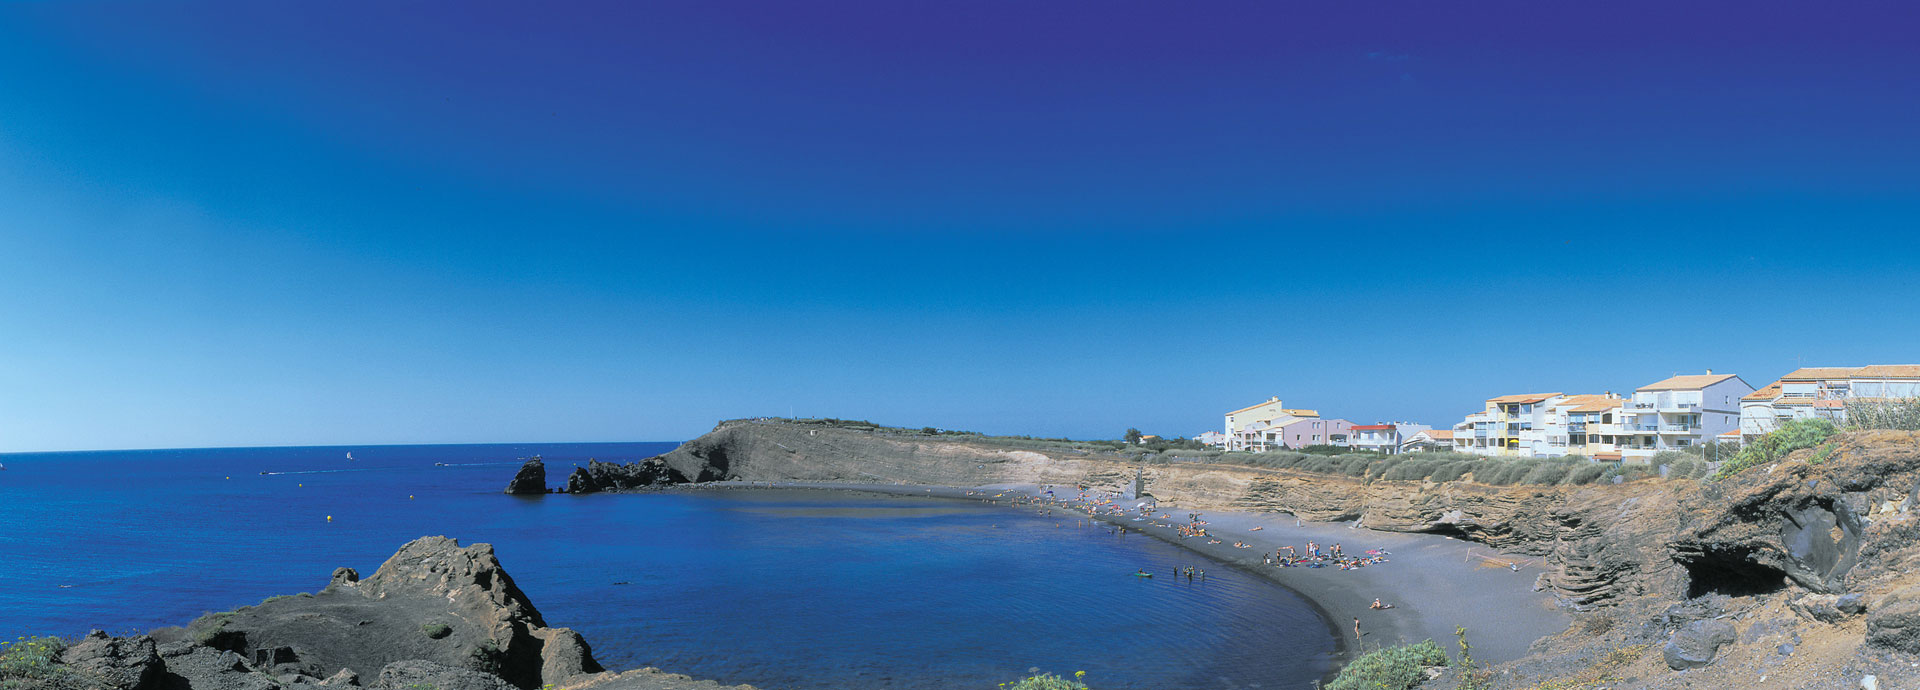 Vermietung von Residenzen in Cap d'Agde: Coralia Vacances